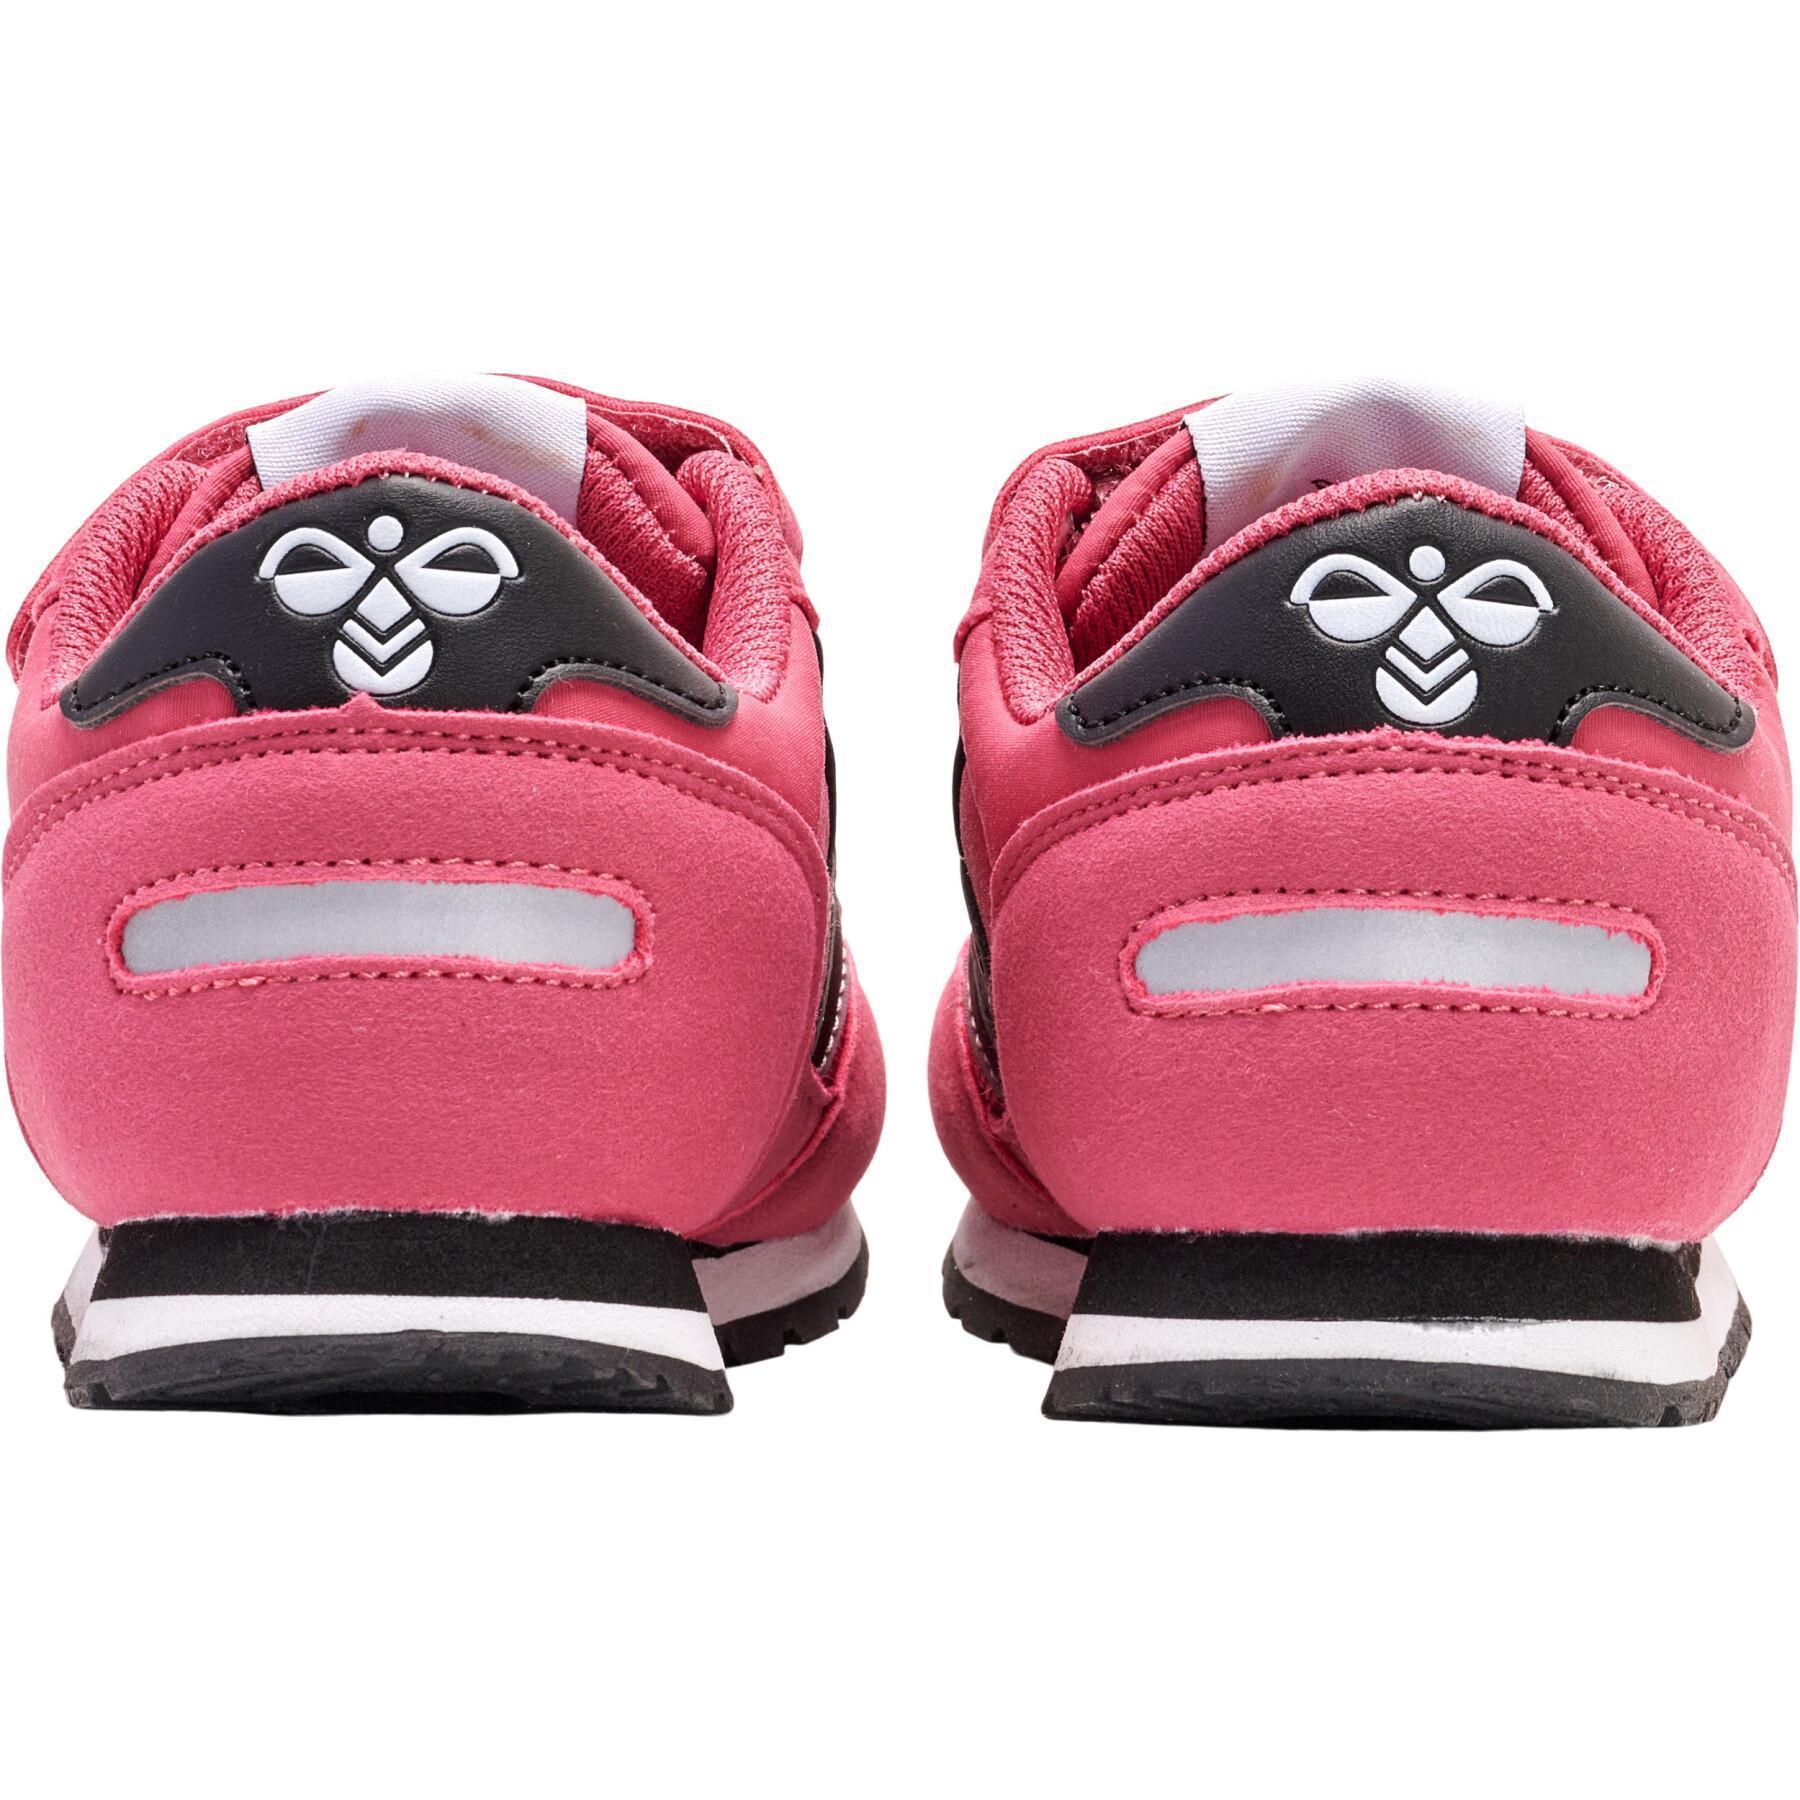 Children's sneakers Hummel Reflex